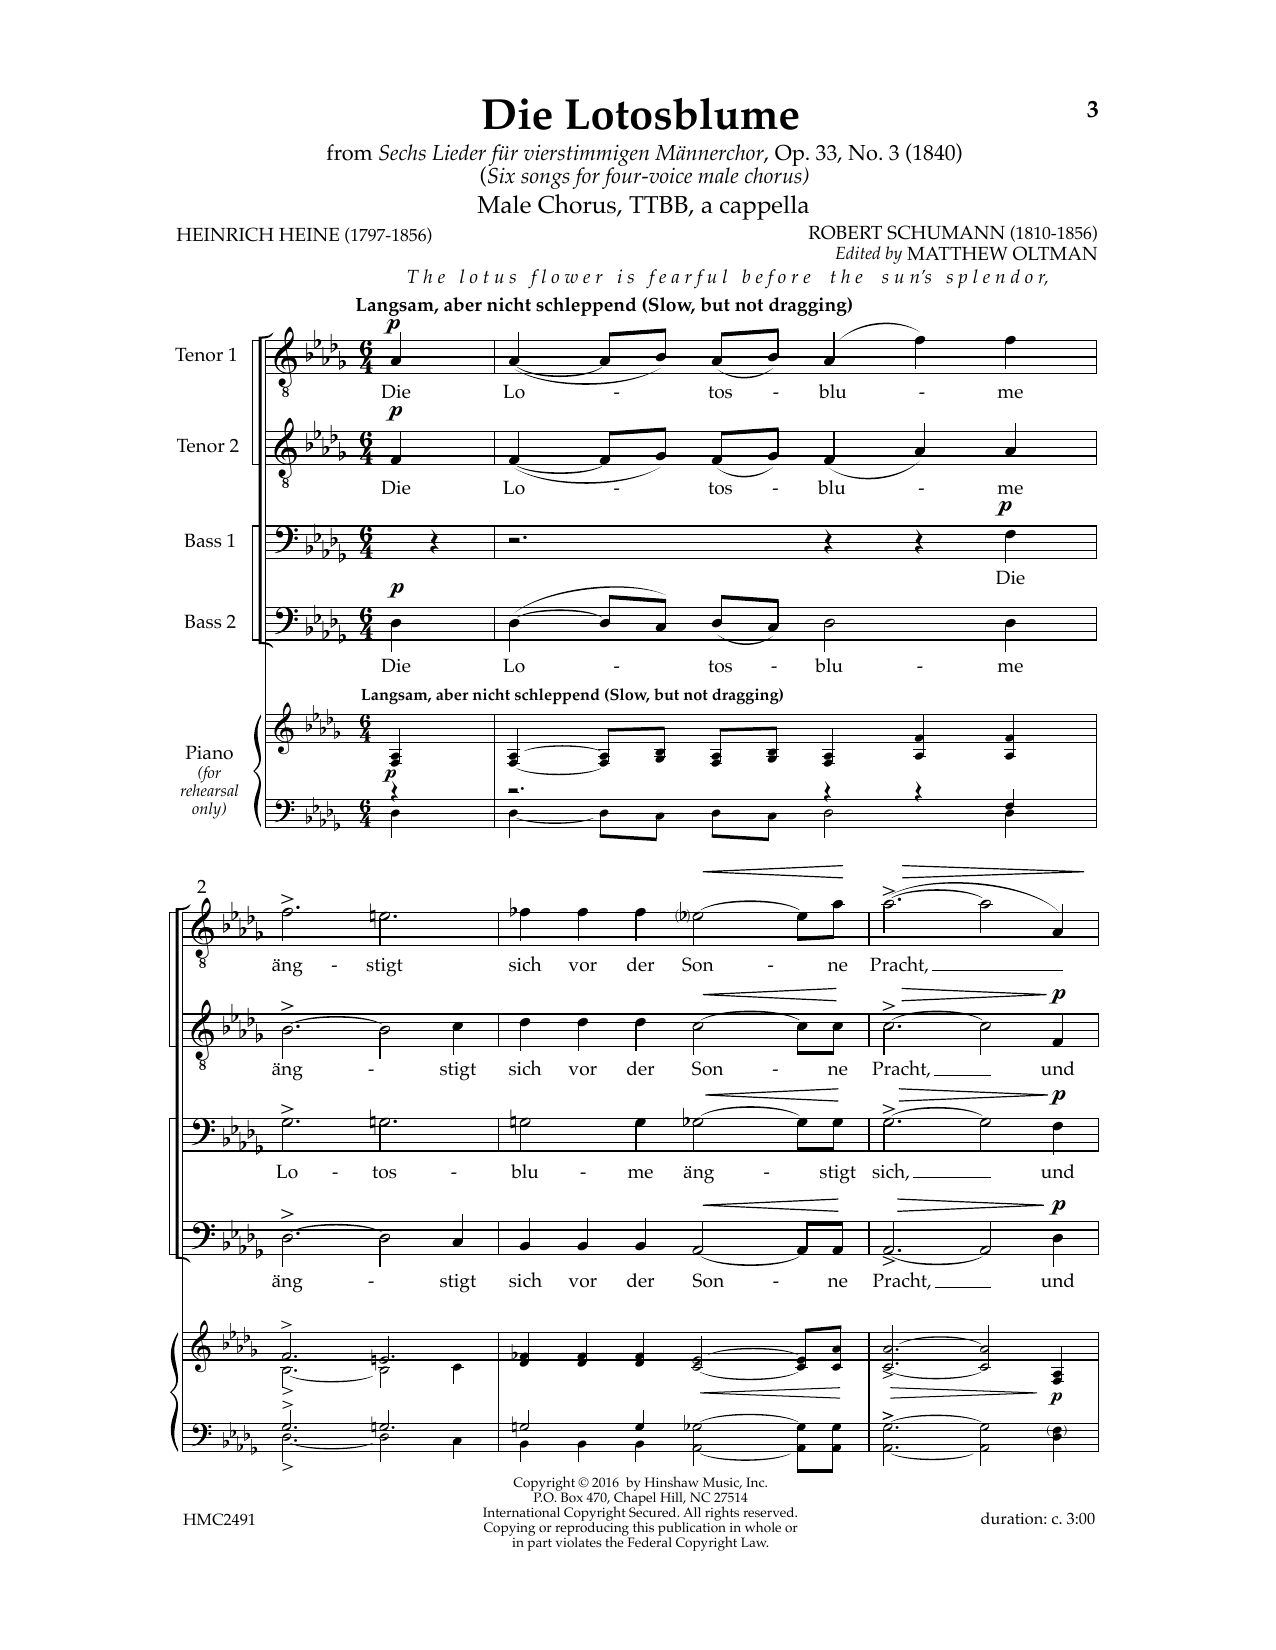 Robert Schumann Die Lotosblume (Ed. Matthew D. Oltman) sheet music notes and chords arranged for TTBB Choir